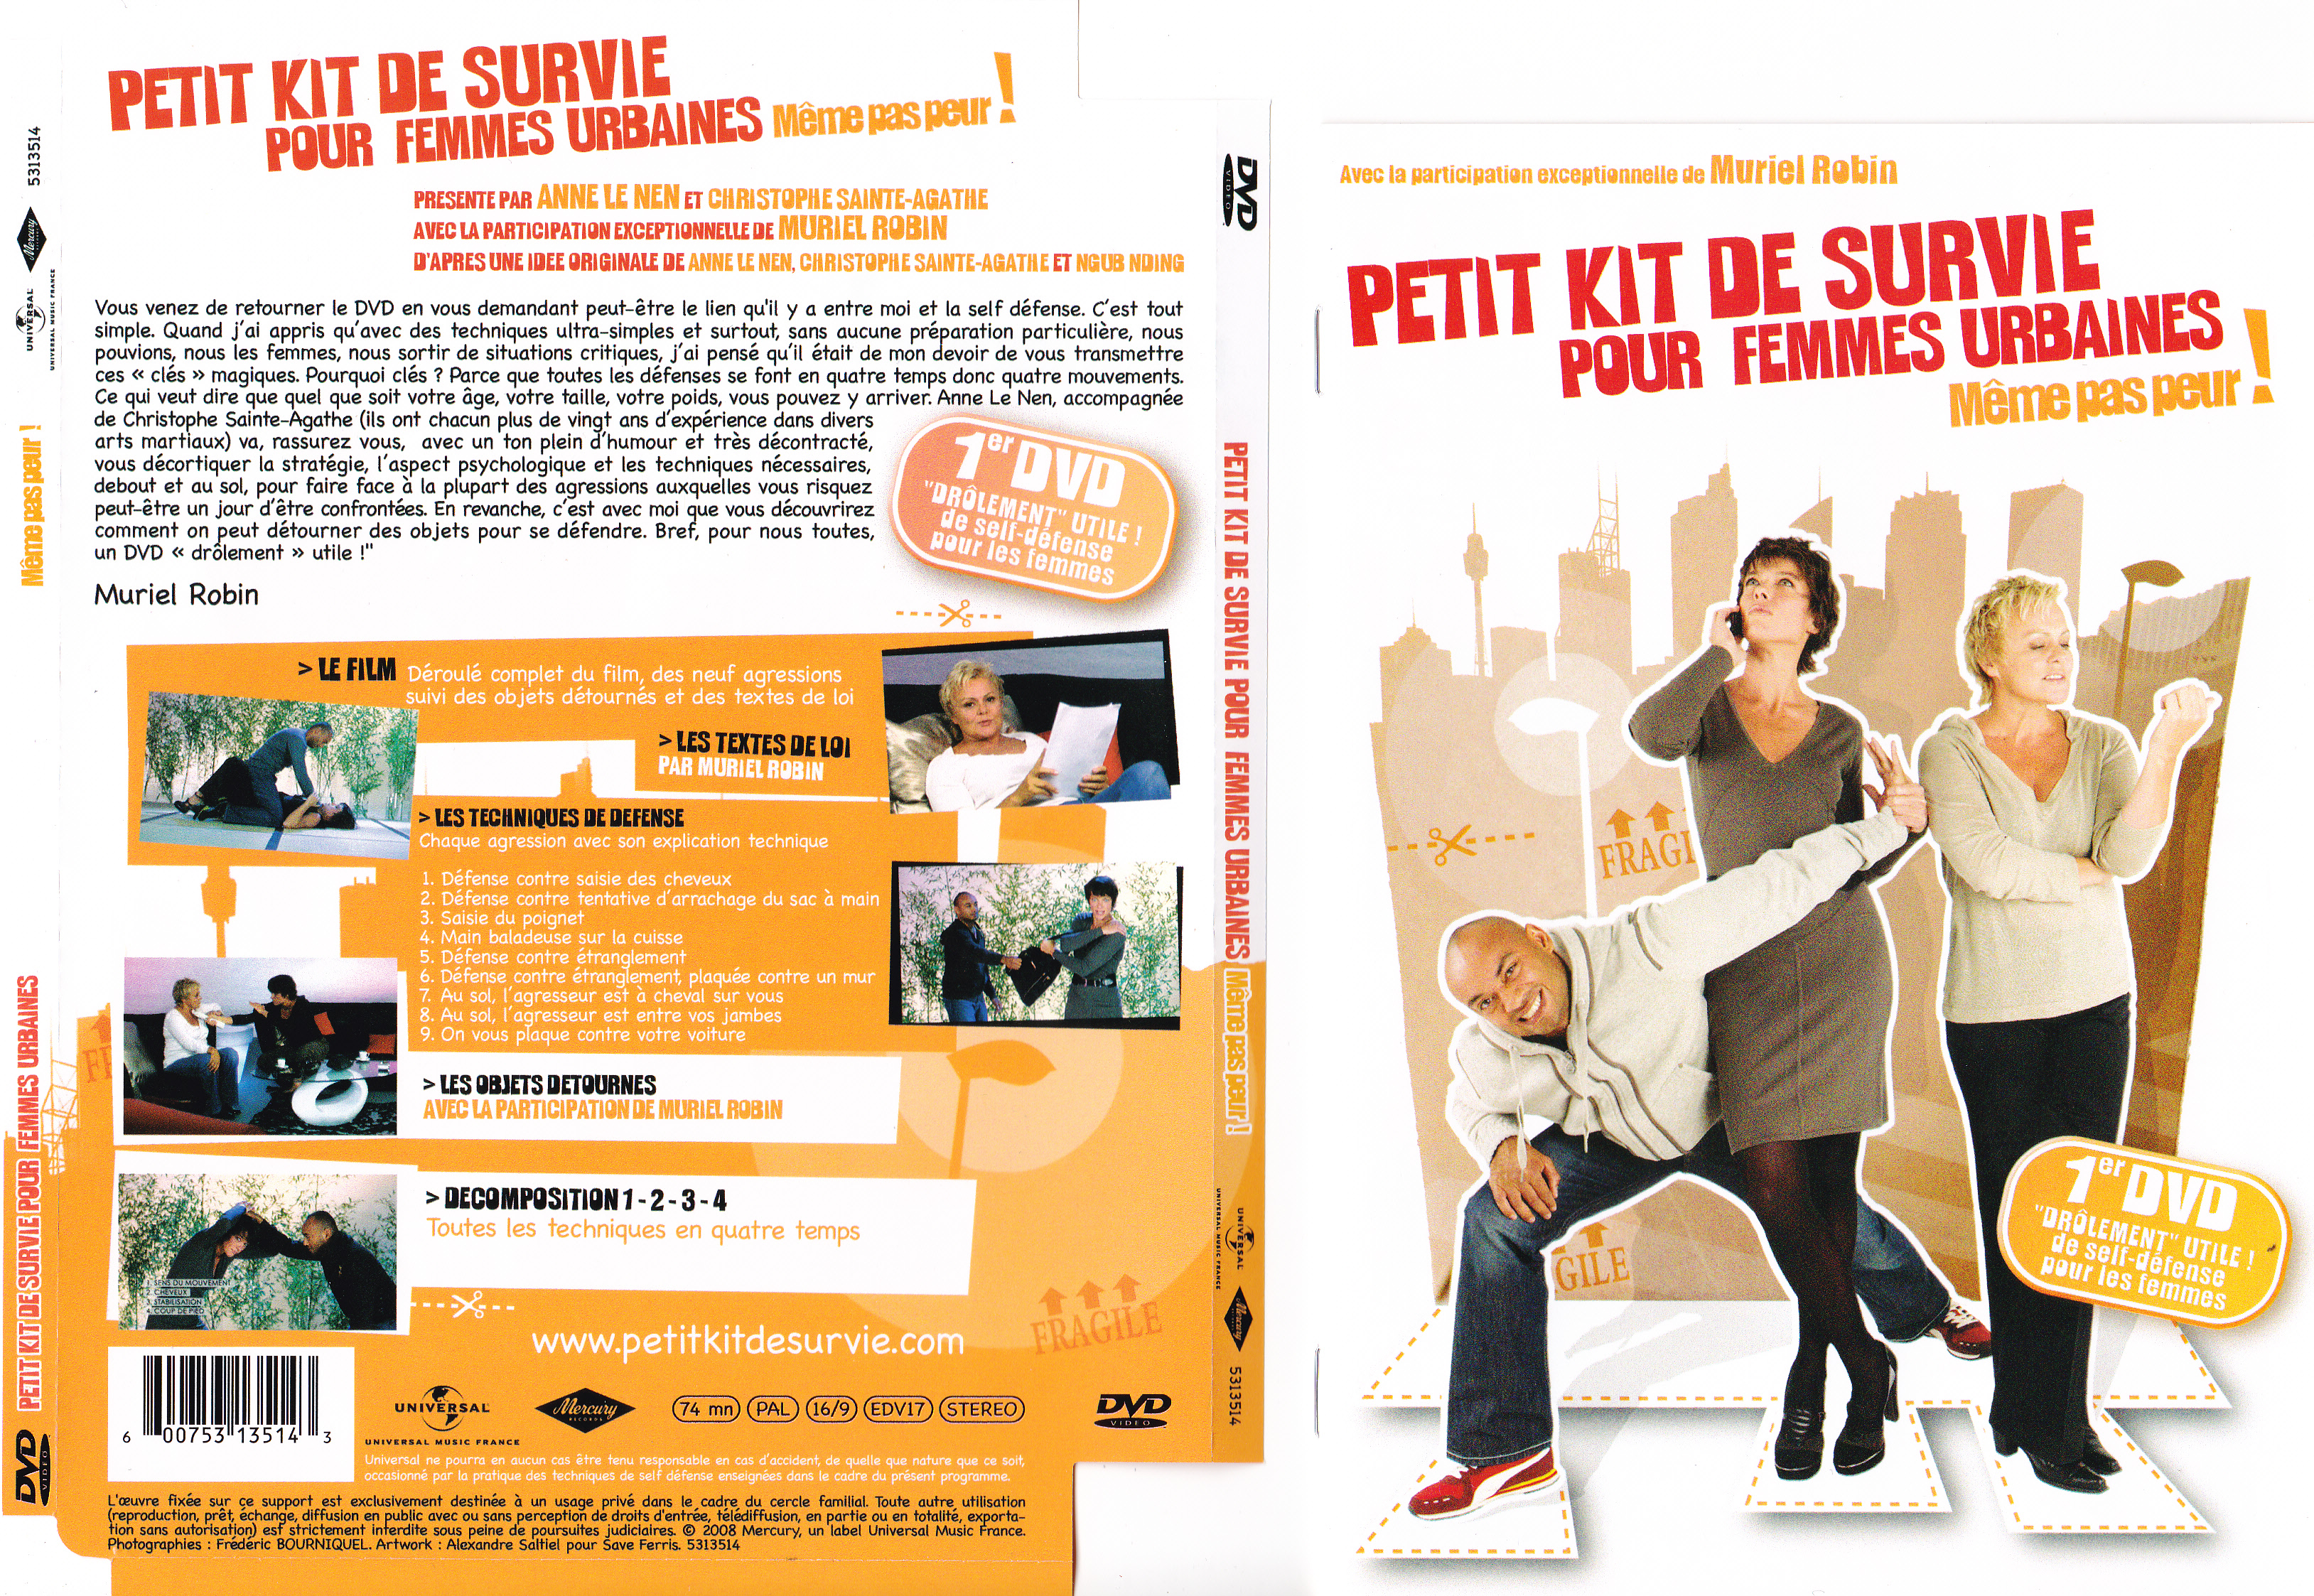 Jaquette DVD Petit kit de survie pour femmes urbaines mme pas peur